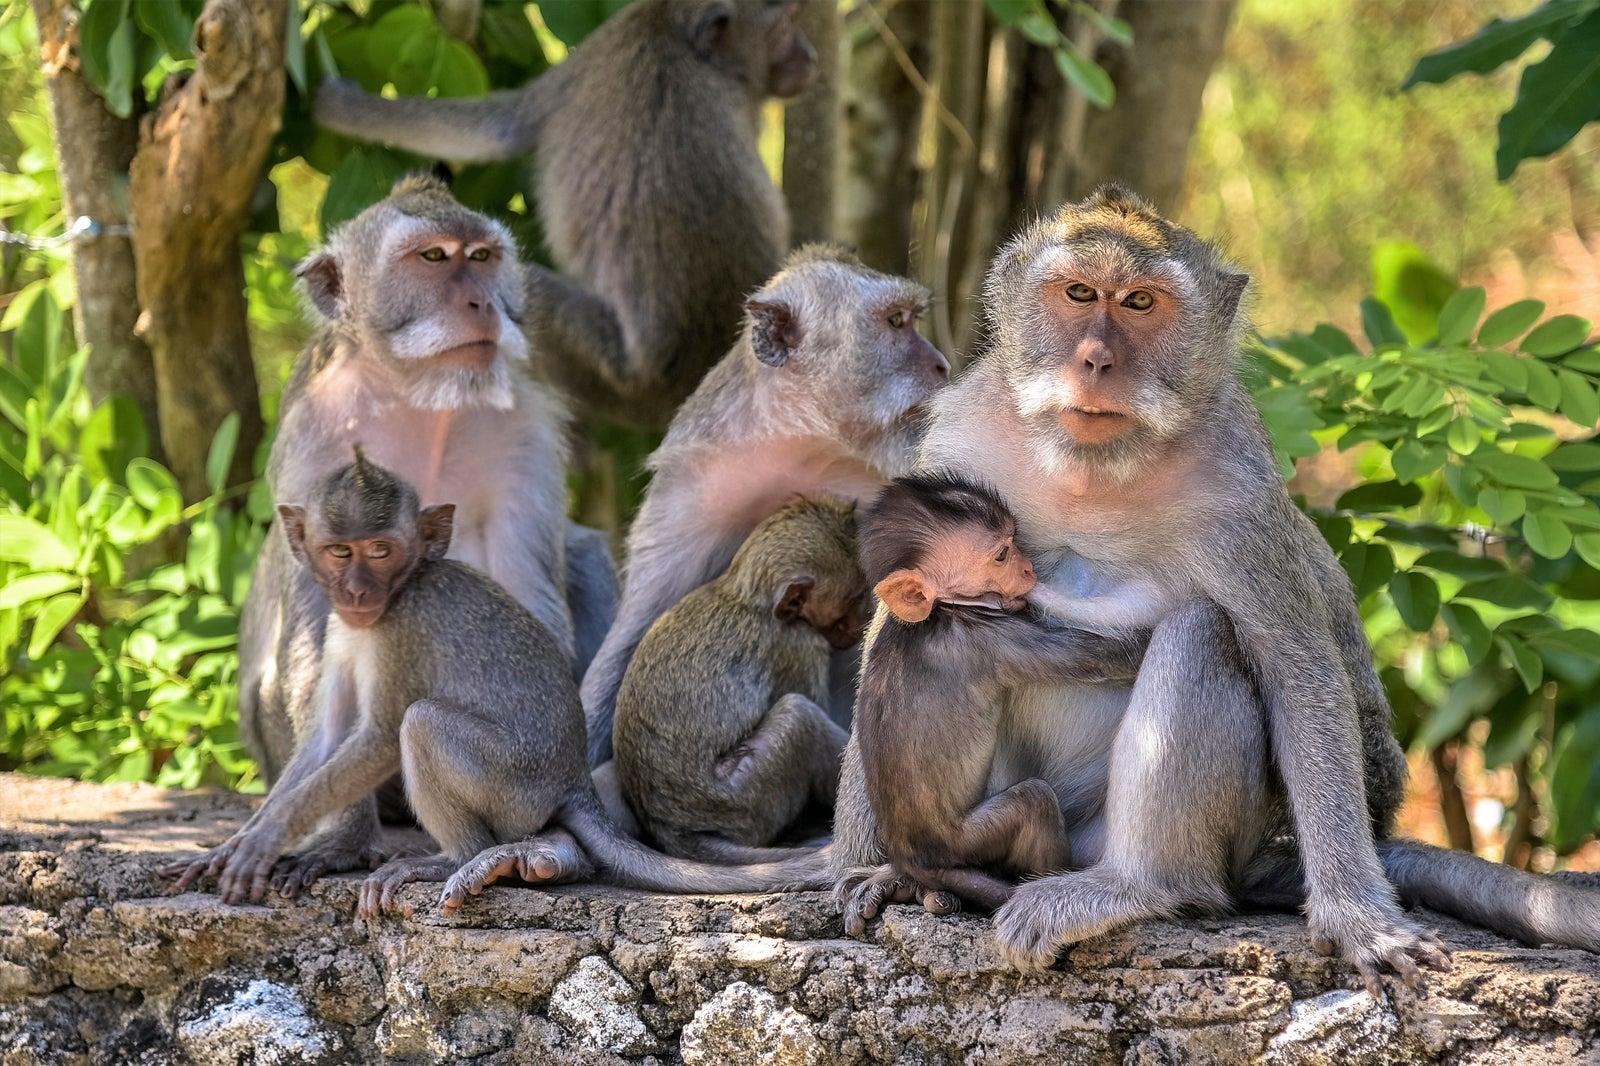 巴厘岛猴群出现智慧迹象?用经济学原理打劫游客,让人无比崩溃